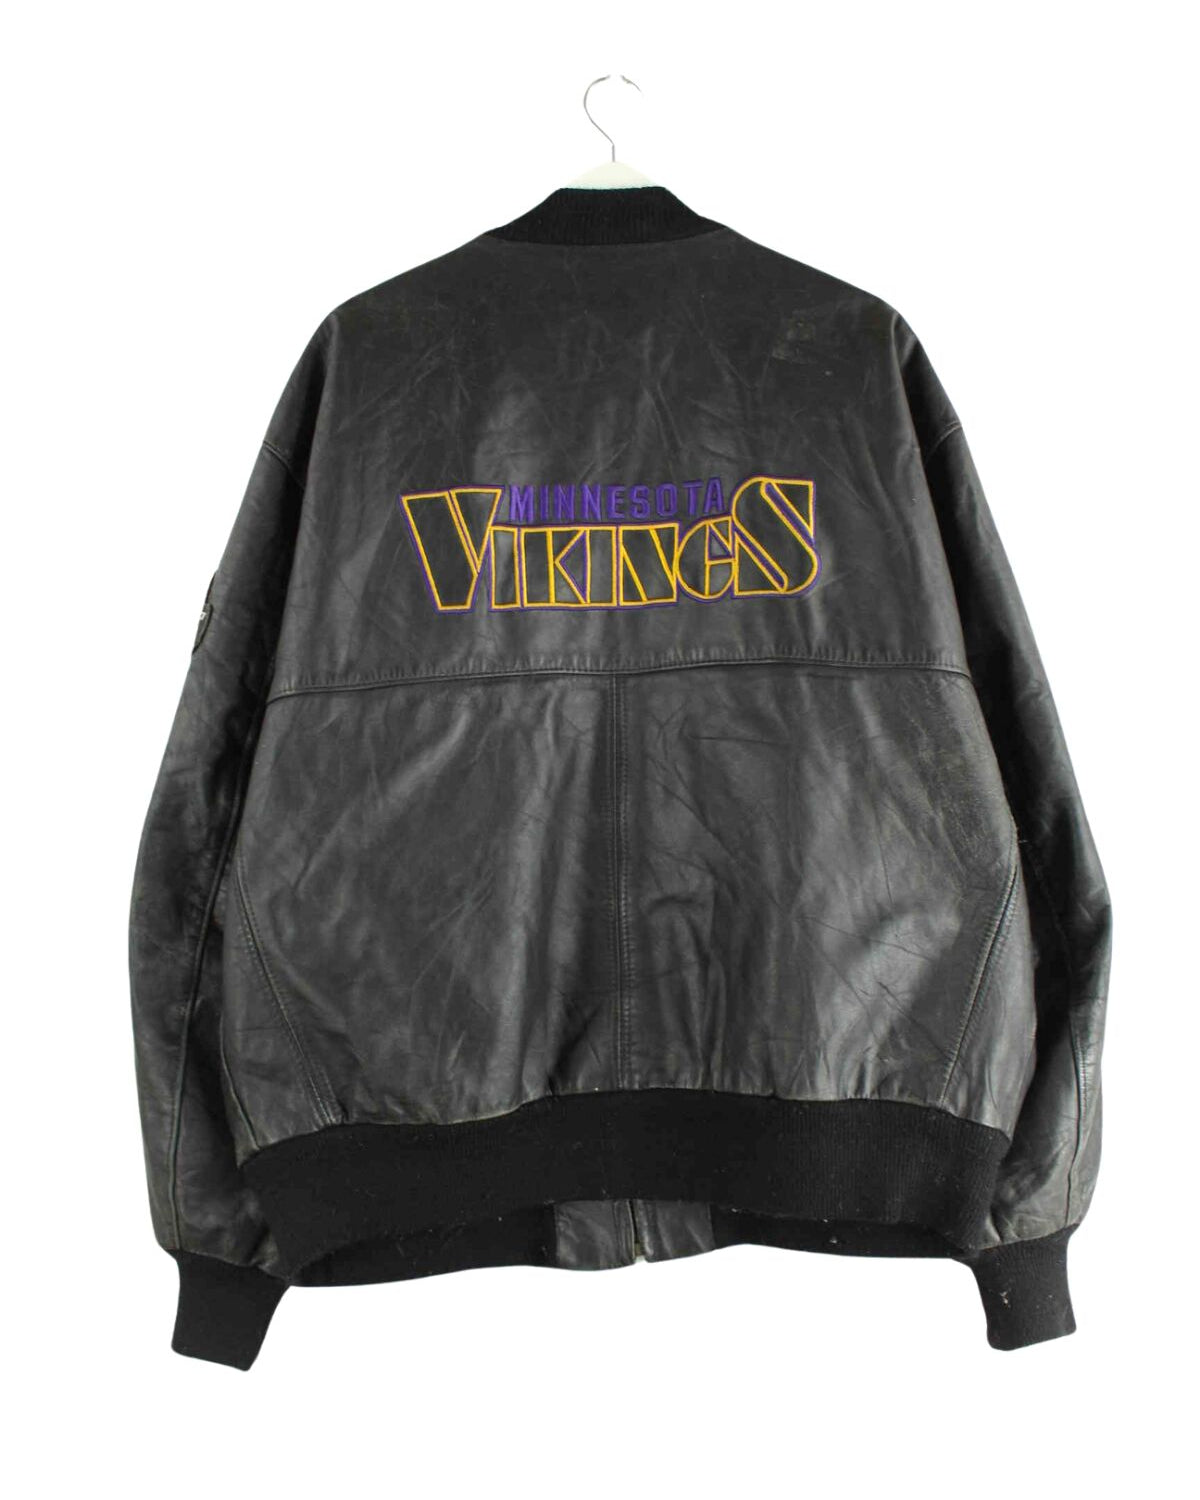 DeLONG 90s Vintage Minnesota Vikings Embroidered Leder Jacke Schwarz XL (back image)